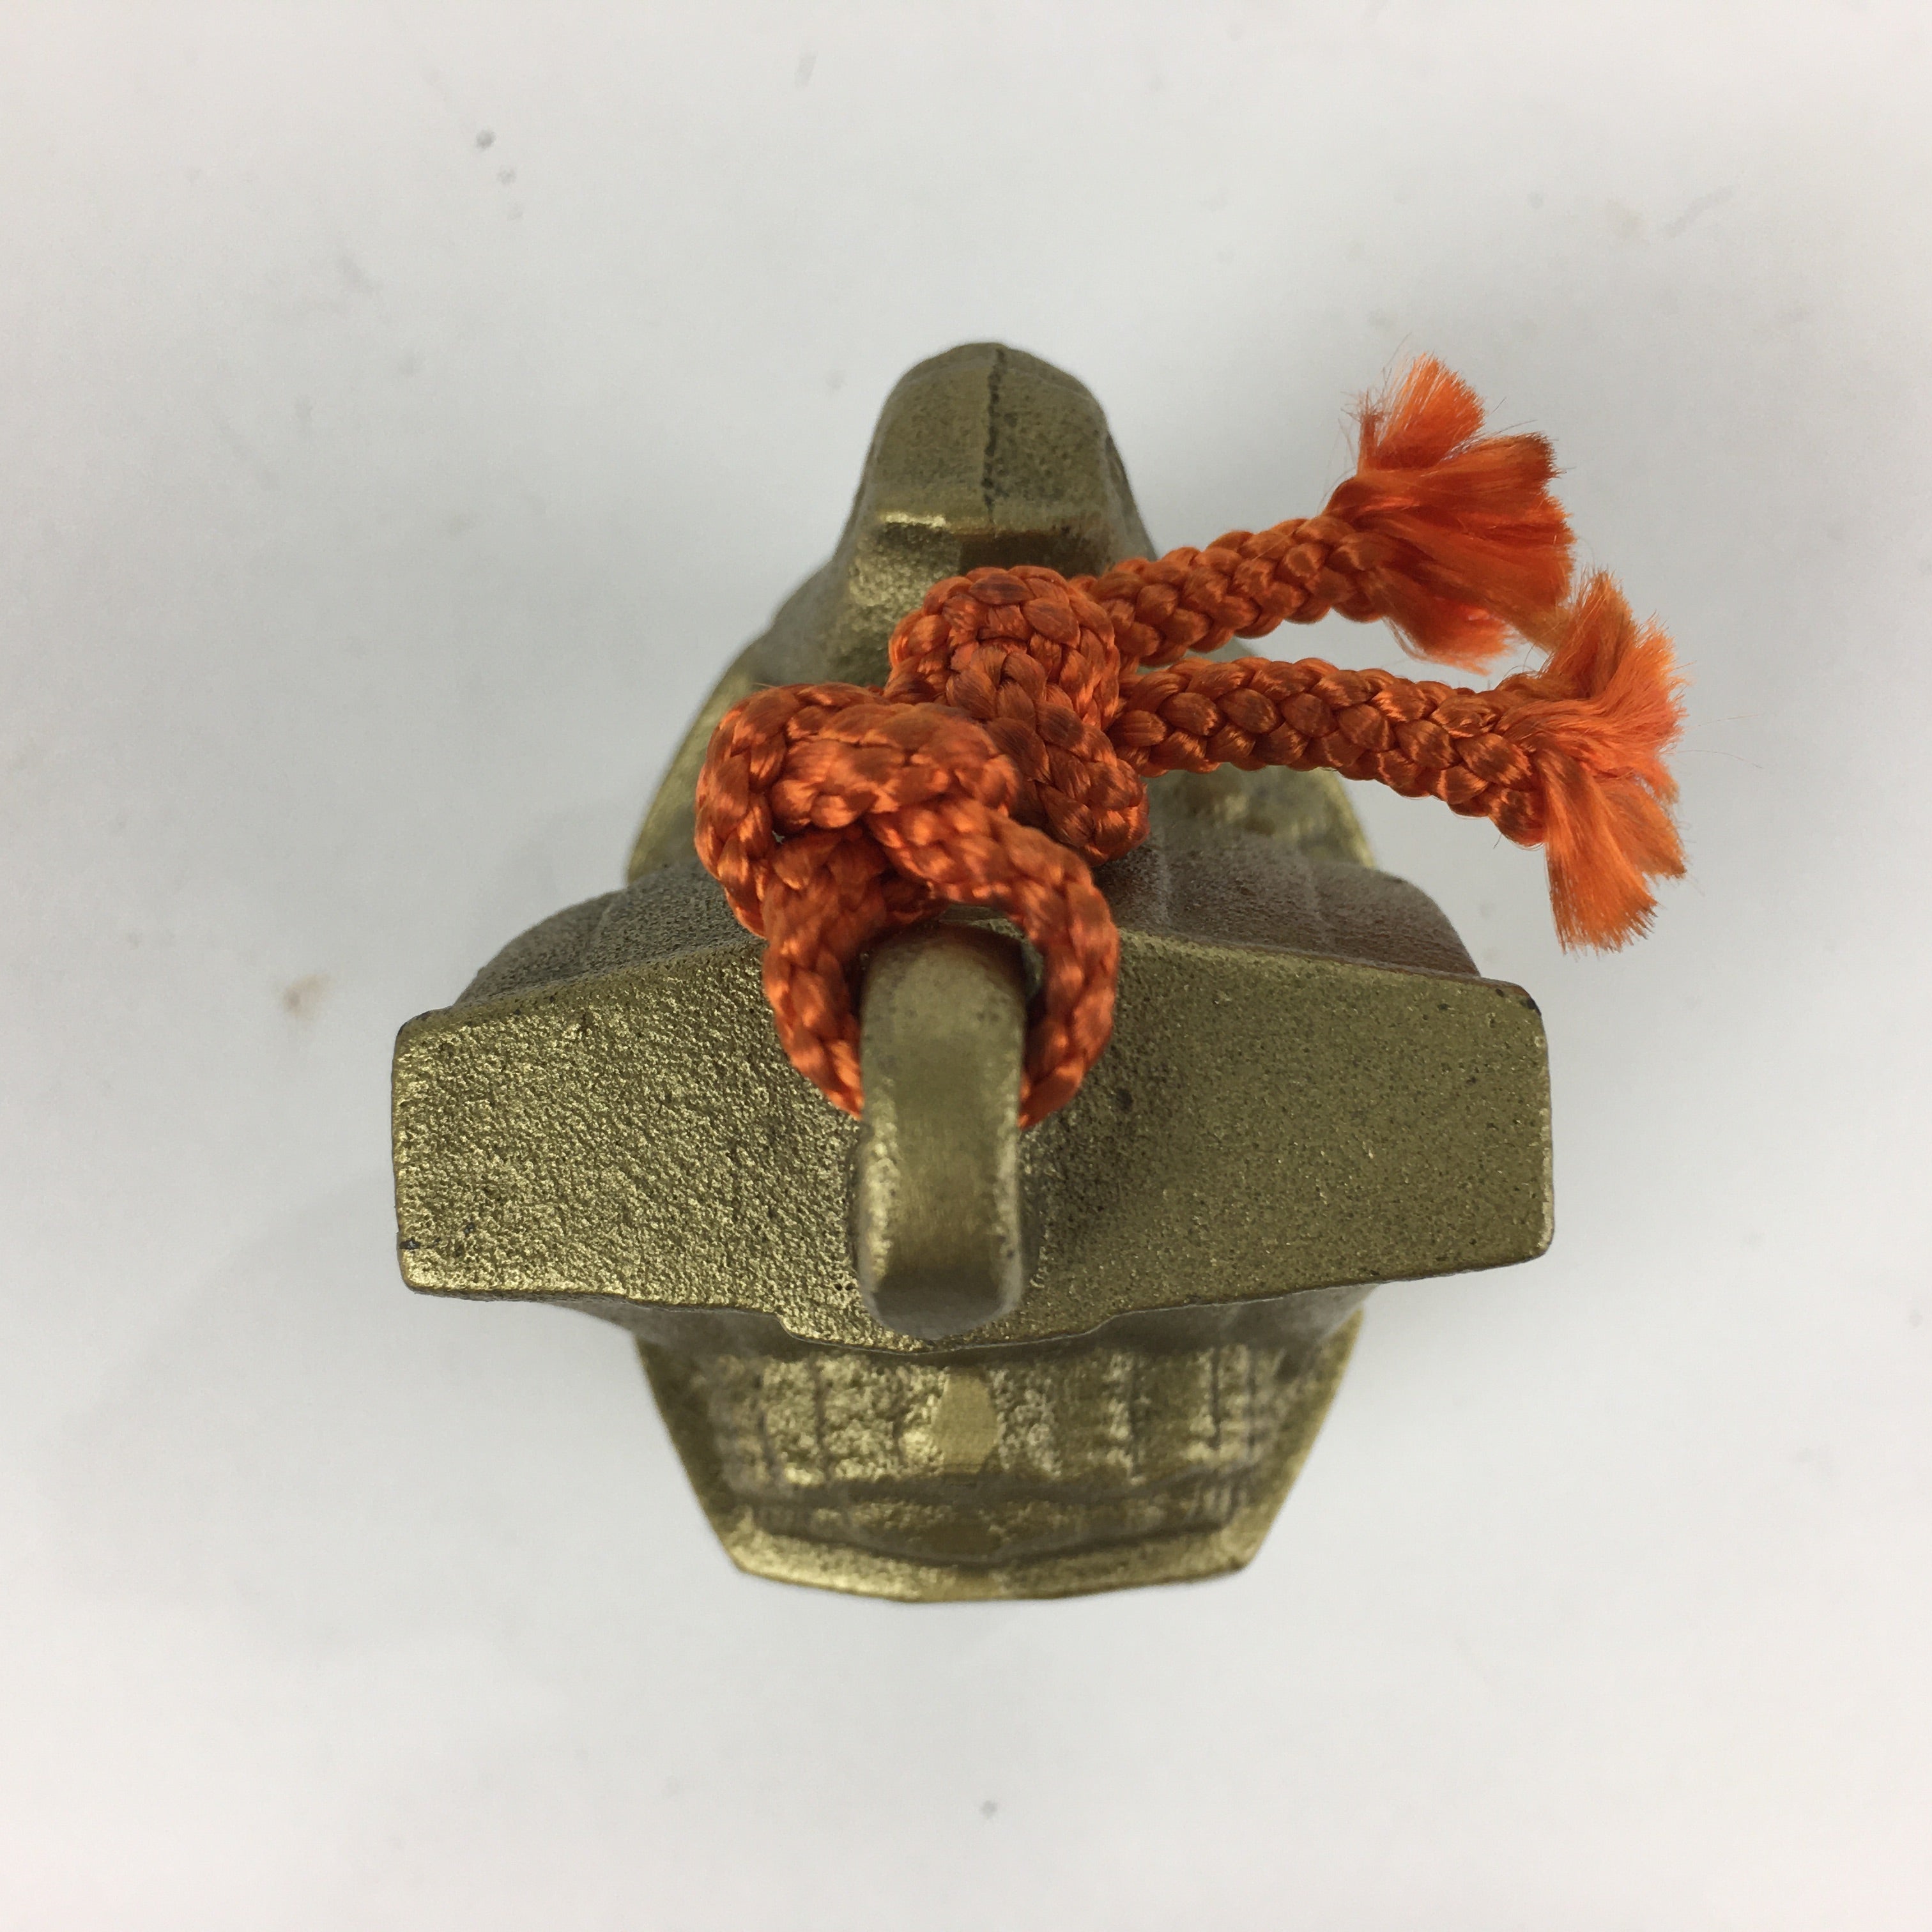 Japanese Iron Bell Dorei Tetsurin Vtg Doll Amulet 7 Lucky God Ship Gold DR357